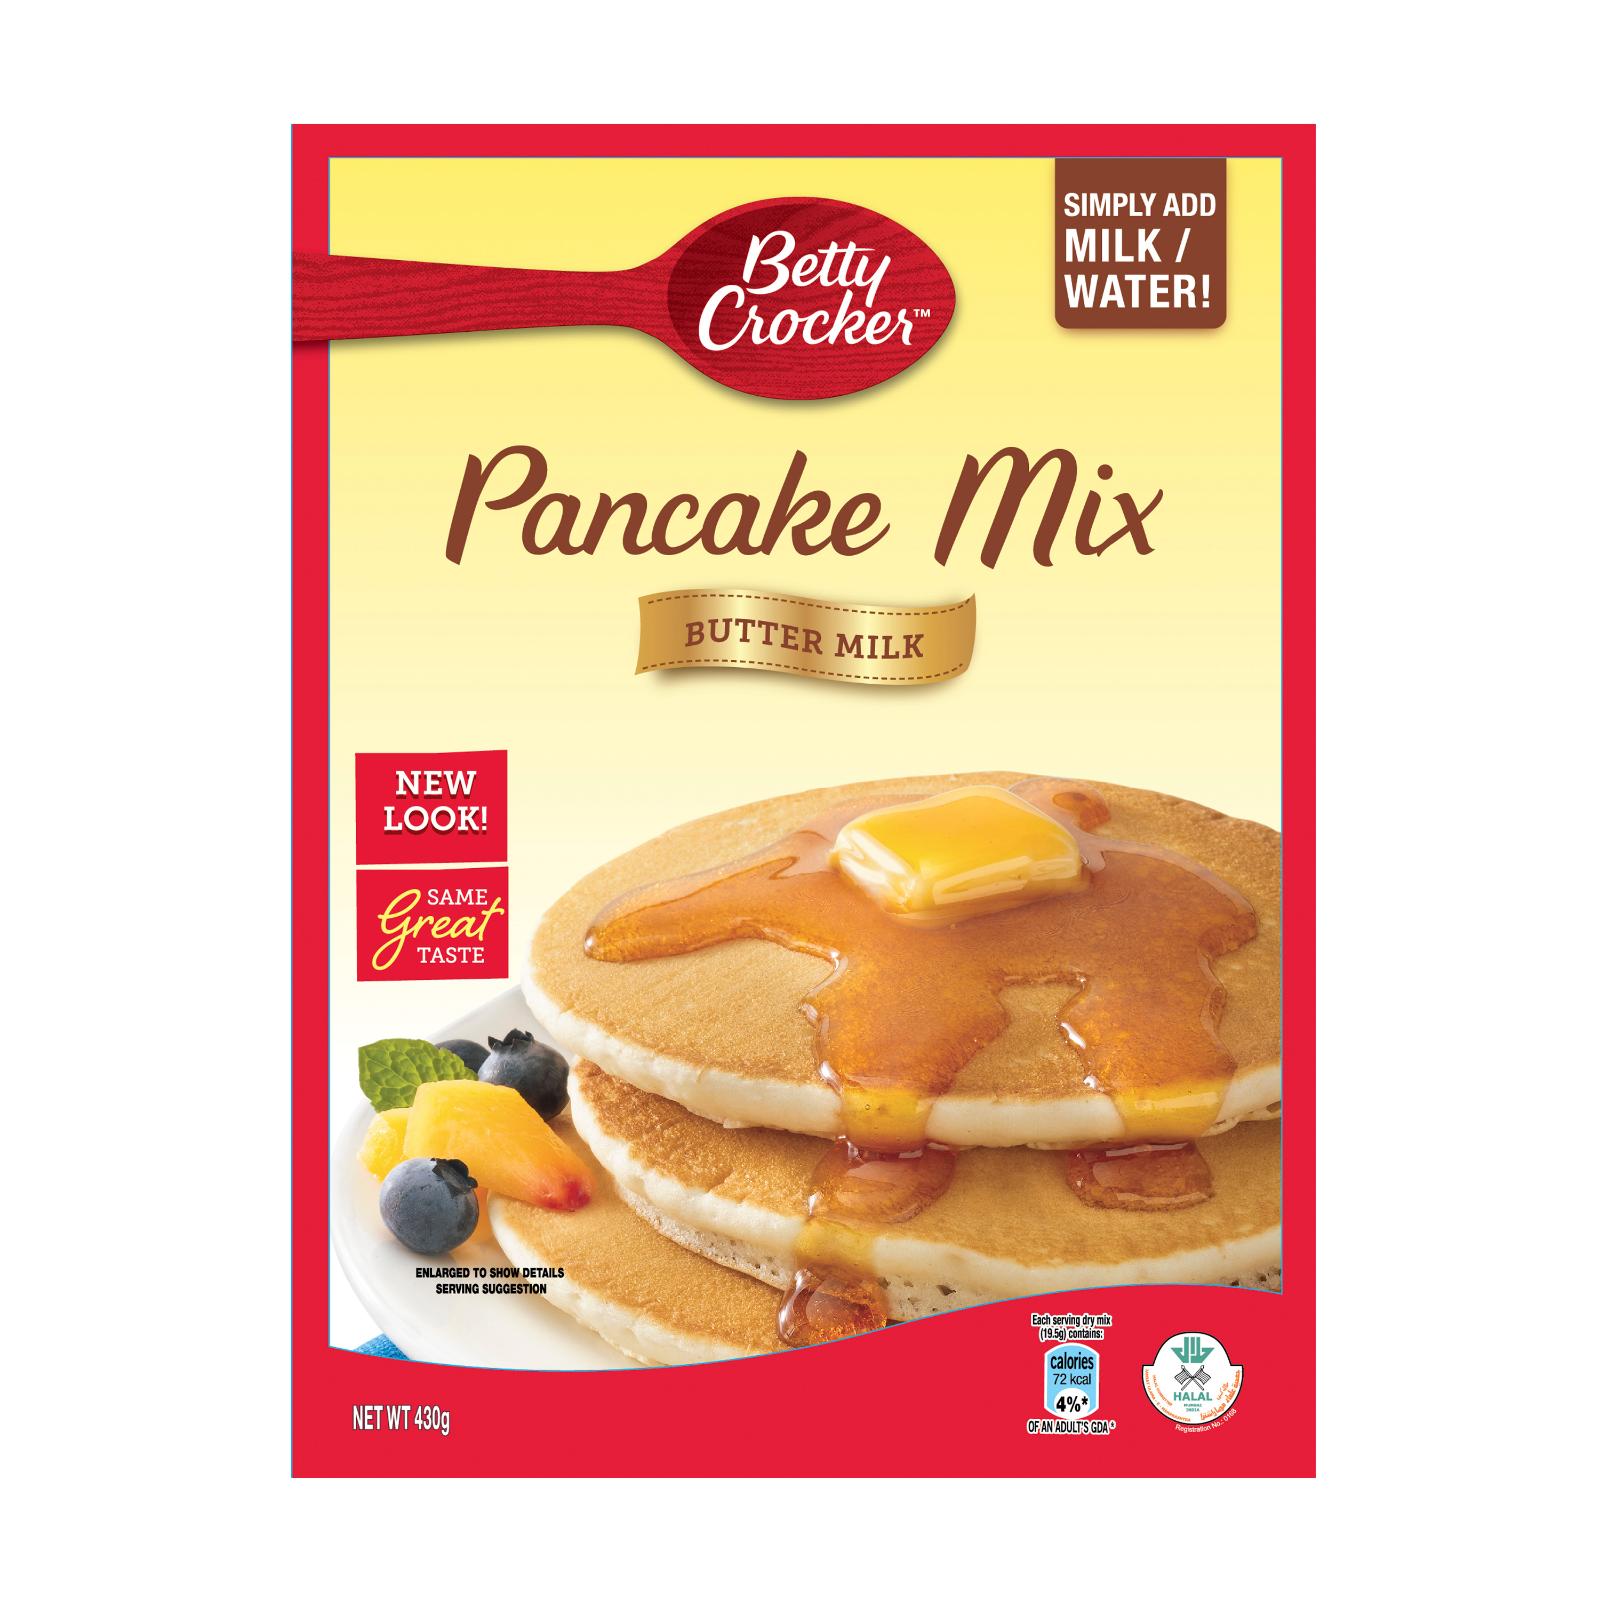 Betty Crocker Pancake Mix